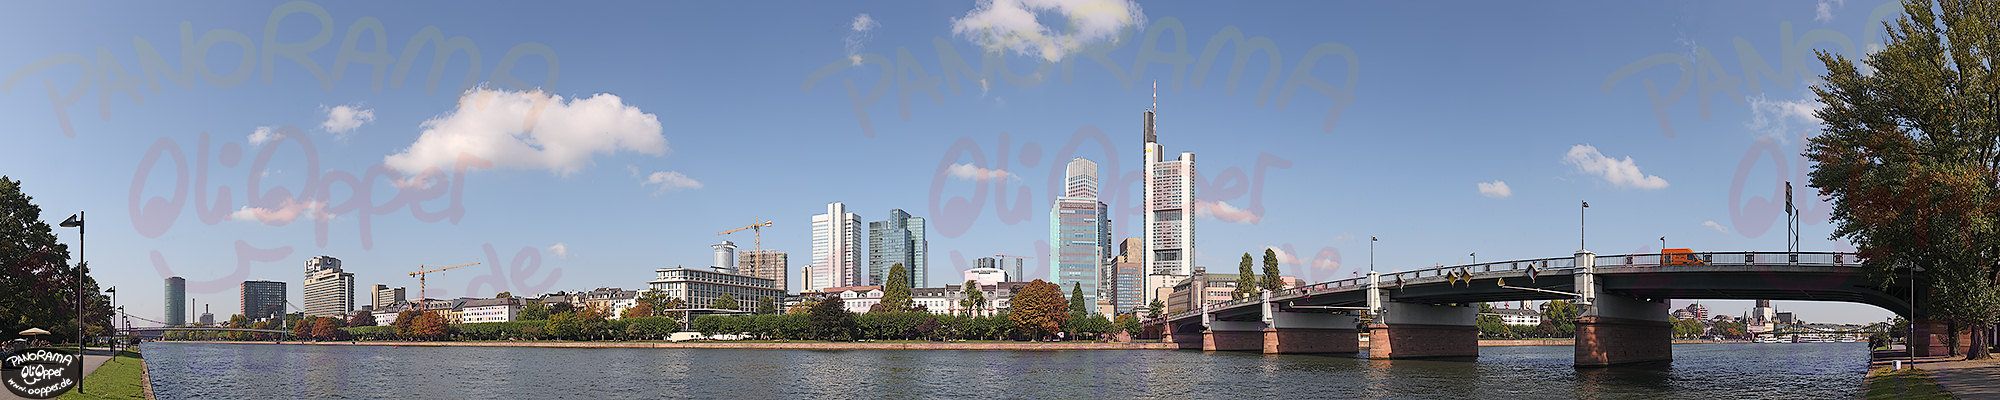 Frankfurt - p309 - (c) by Oliver Opper